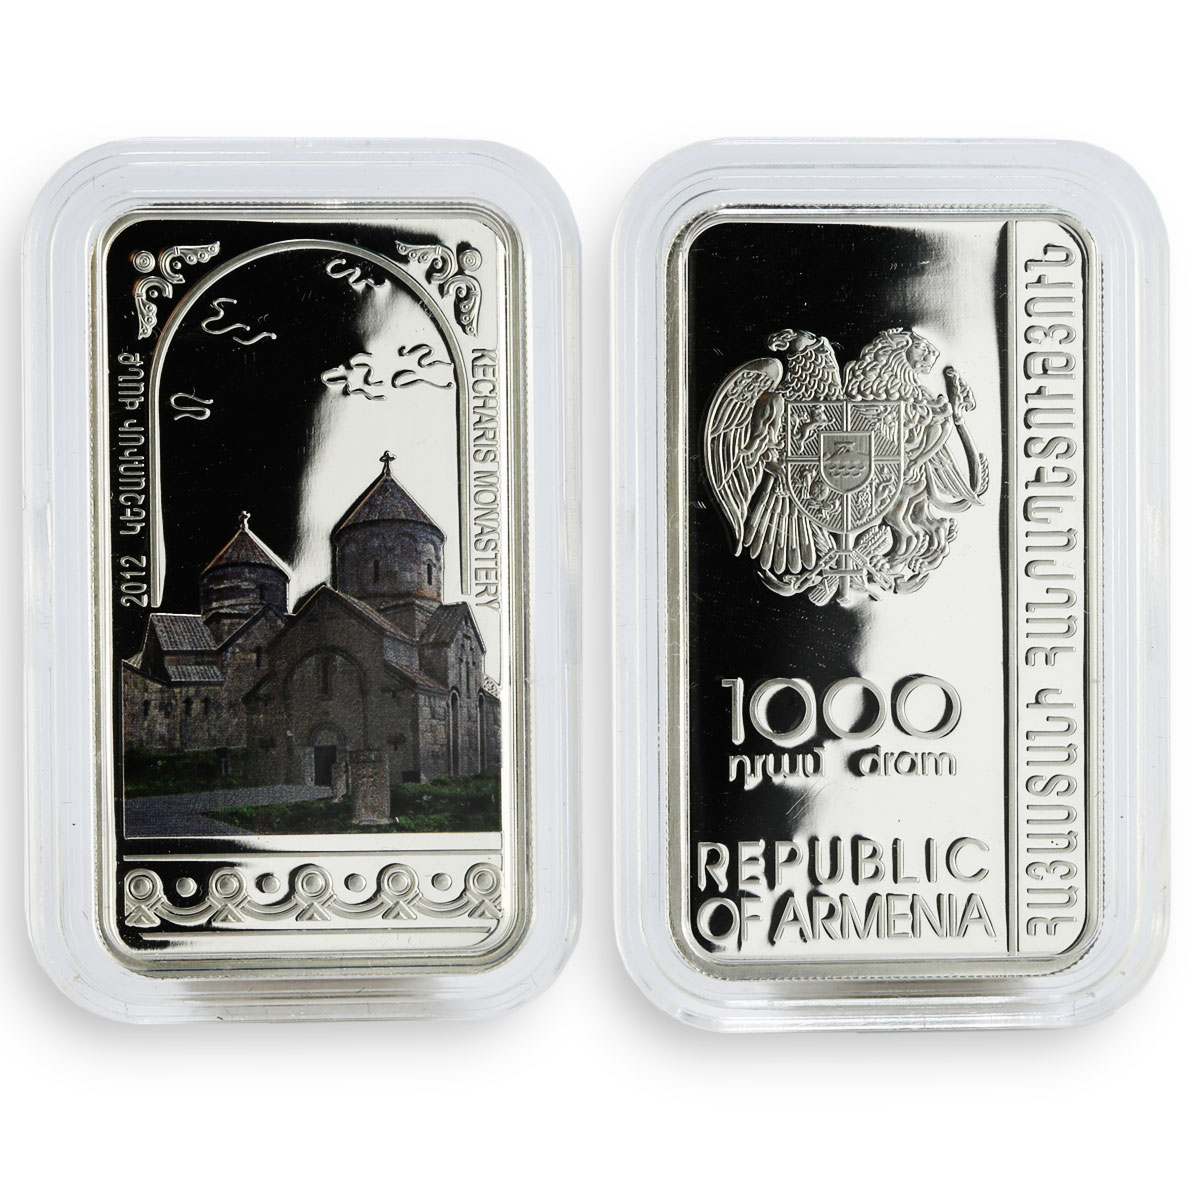 Armenia set of 6 coins 1000 dram Armenian Monasteries and Churches silver 2012